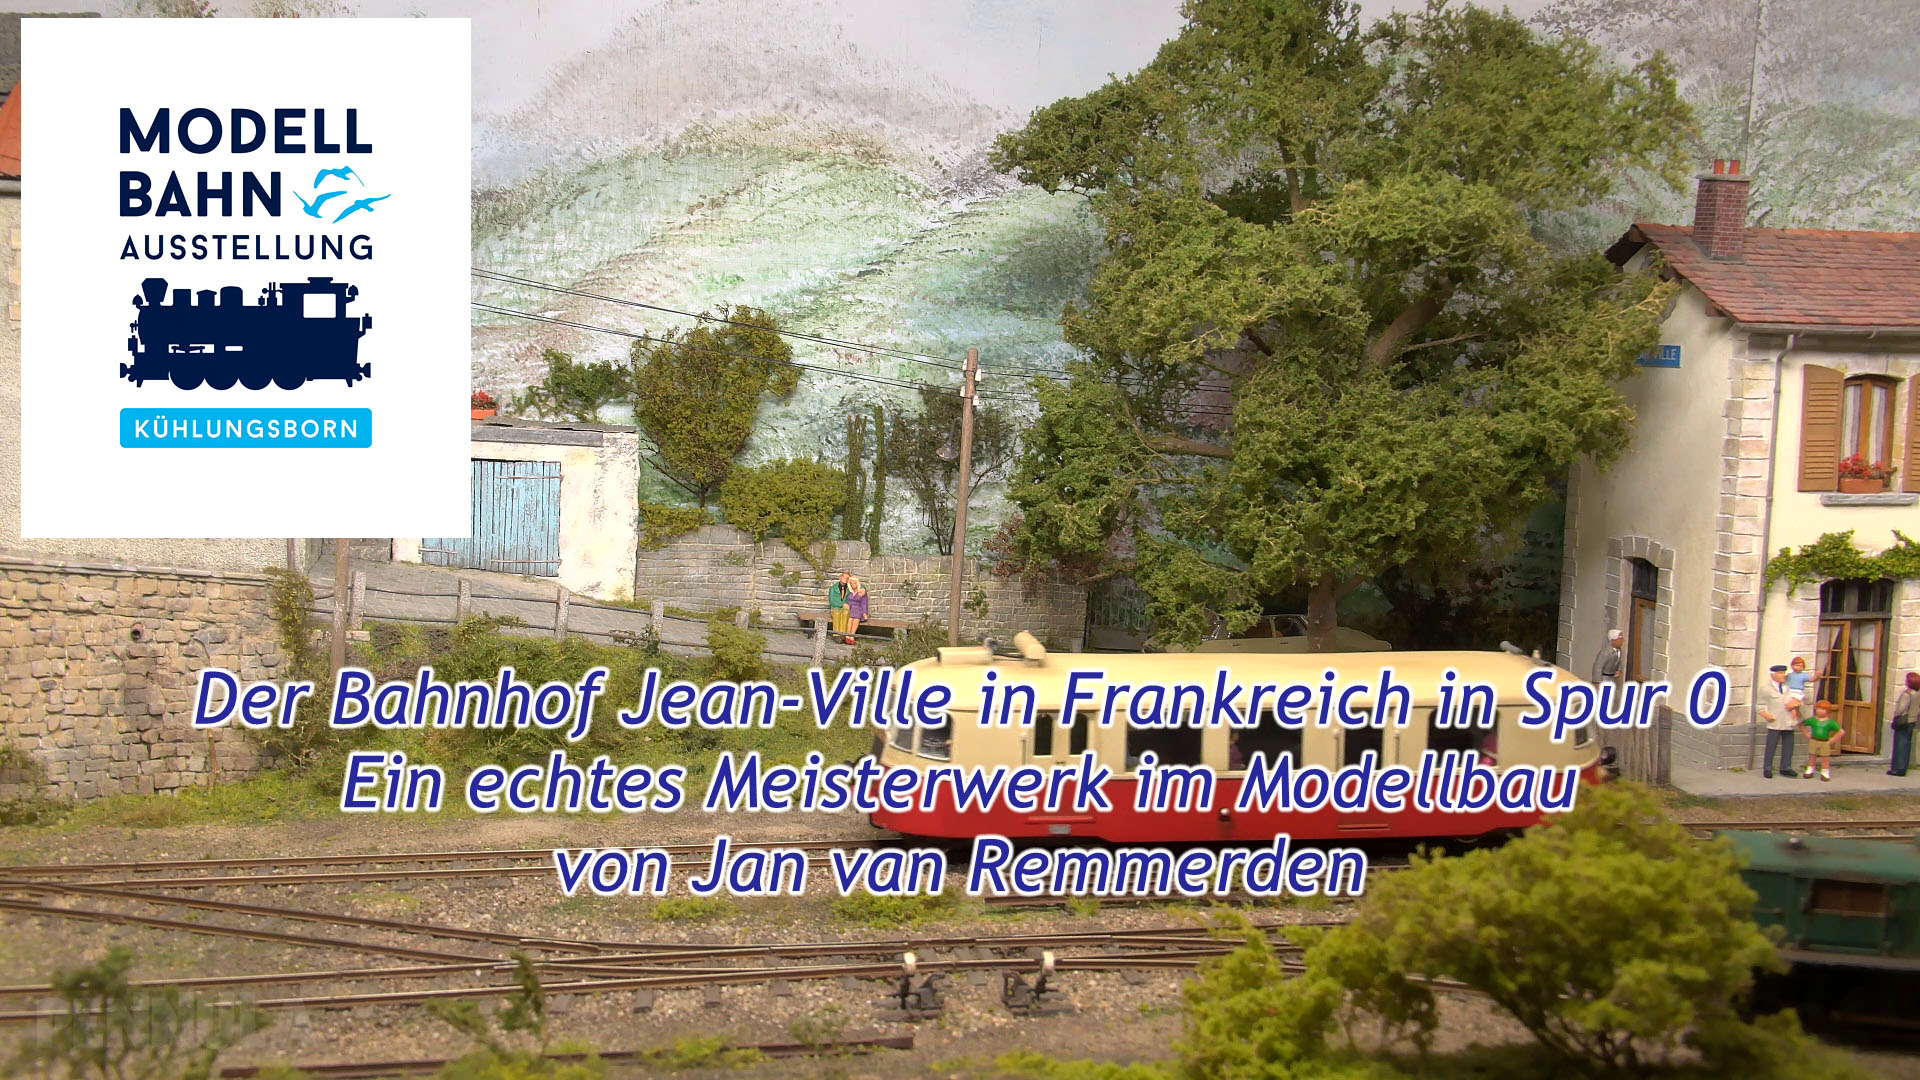 Bahnhof Jean-Ville in Spur 0 - Ein echtes Meisterwerk im Modellbau von Jan van Remmerden